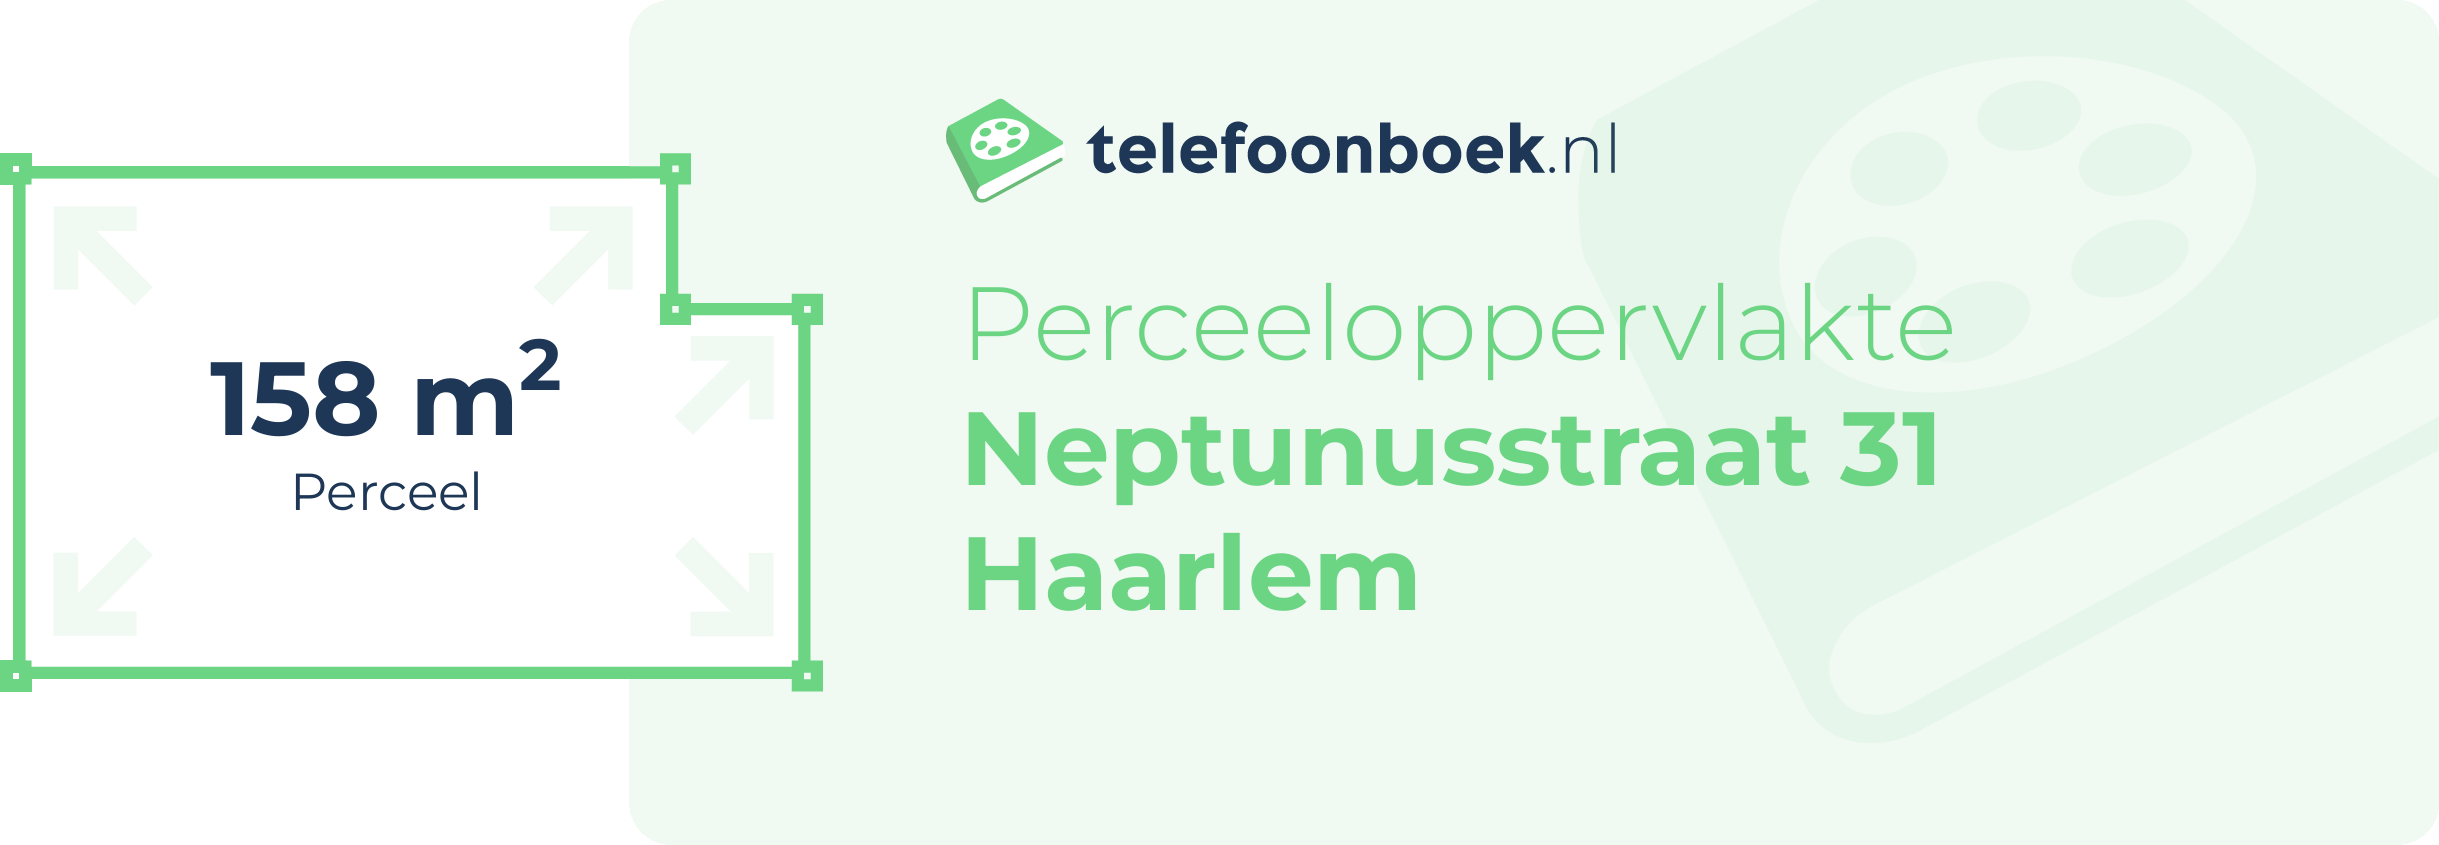 Perceeloppervlakte Neptunusstraat 31 Haarlem